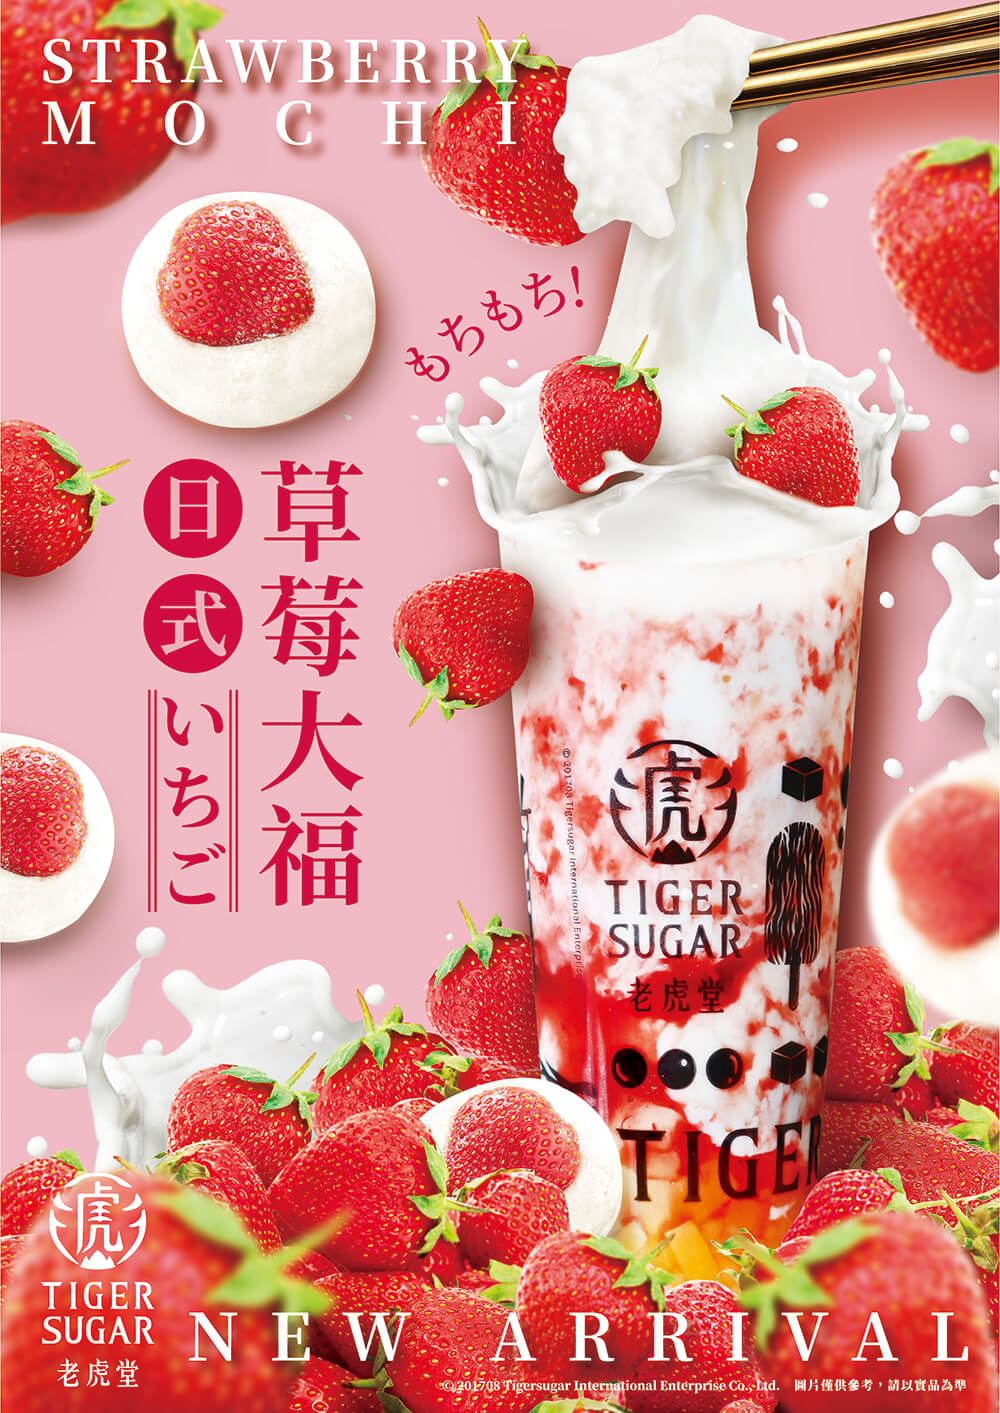 Tiger Sugar Strawberry Mochi